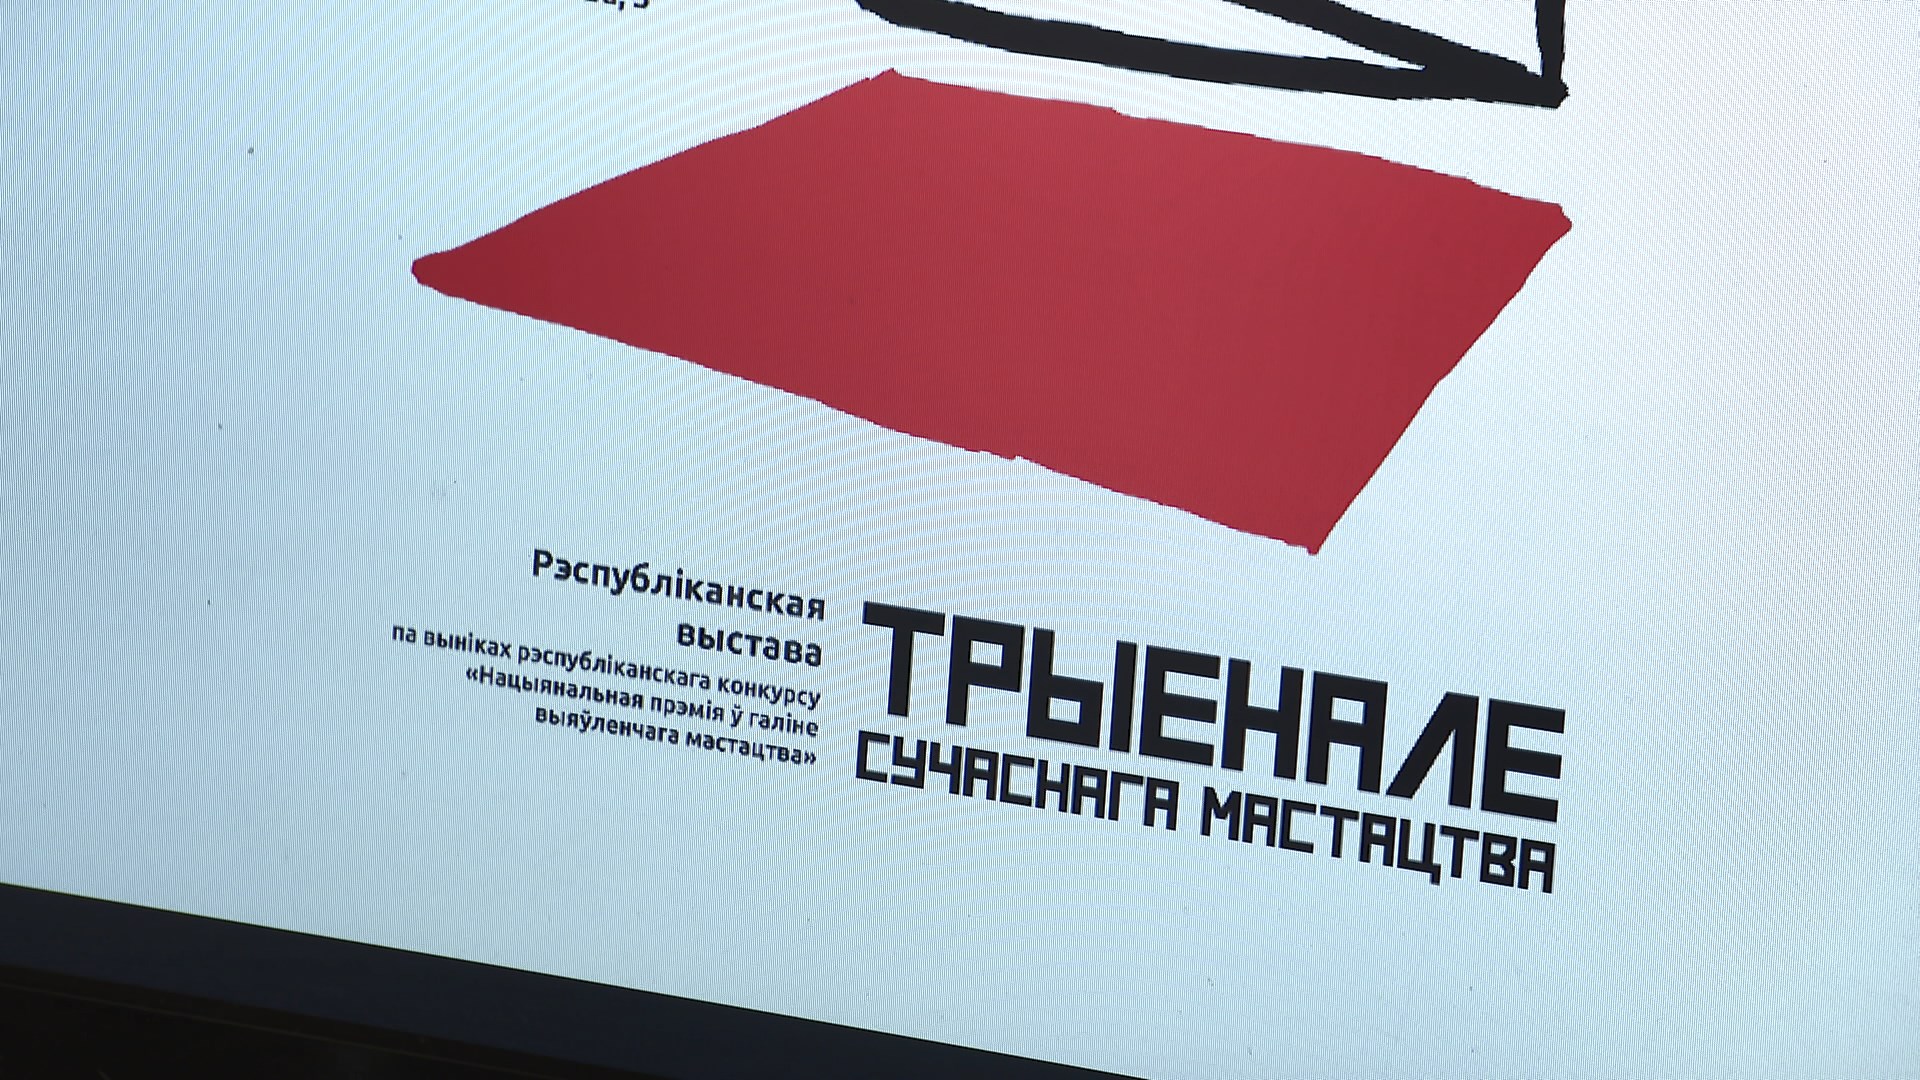 Триеннале современного искусства пройдёт в Минске